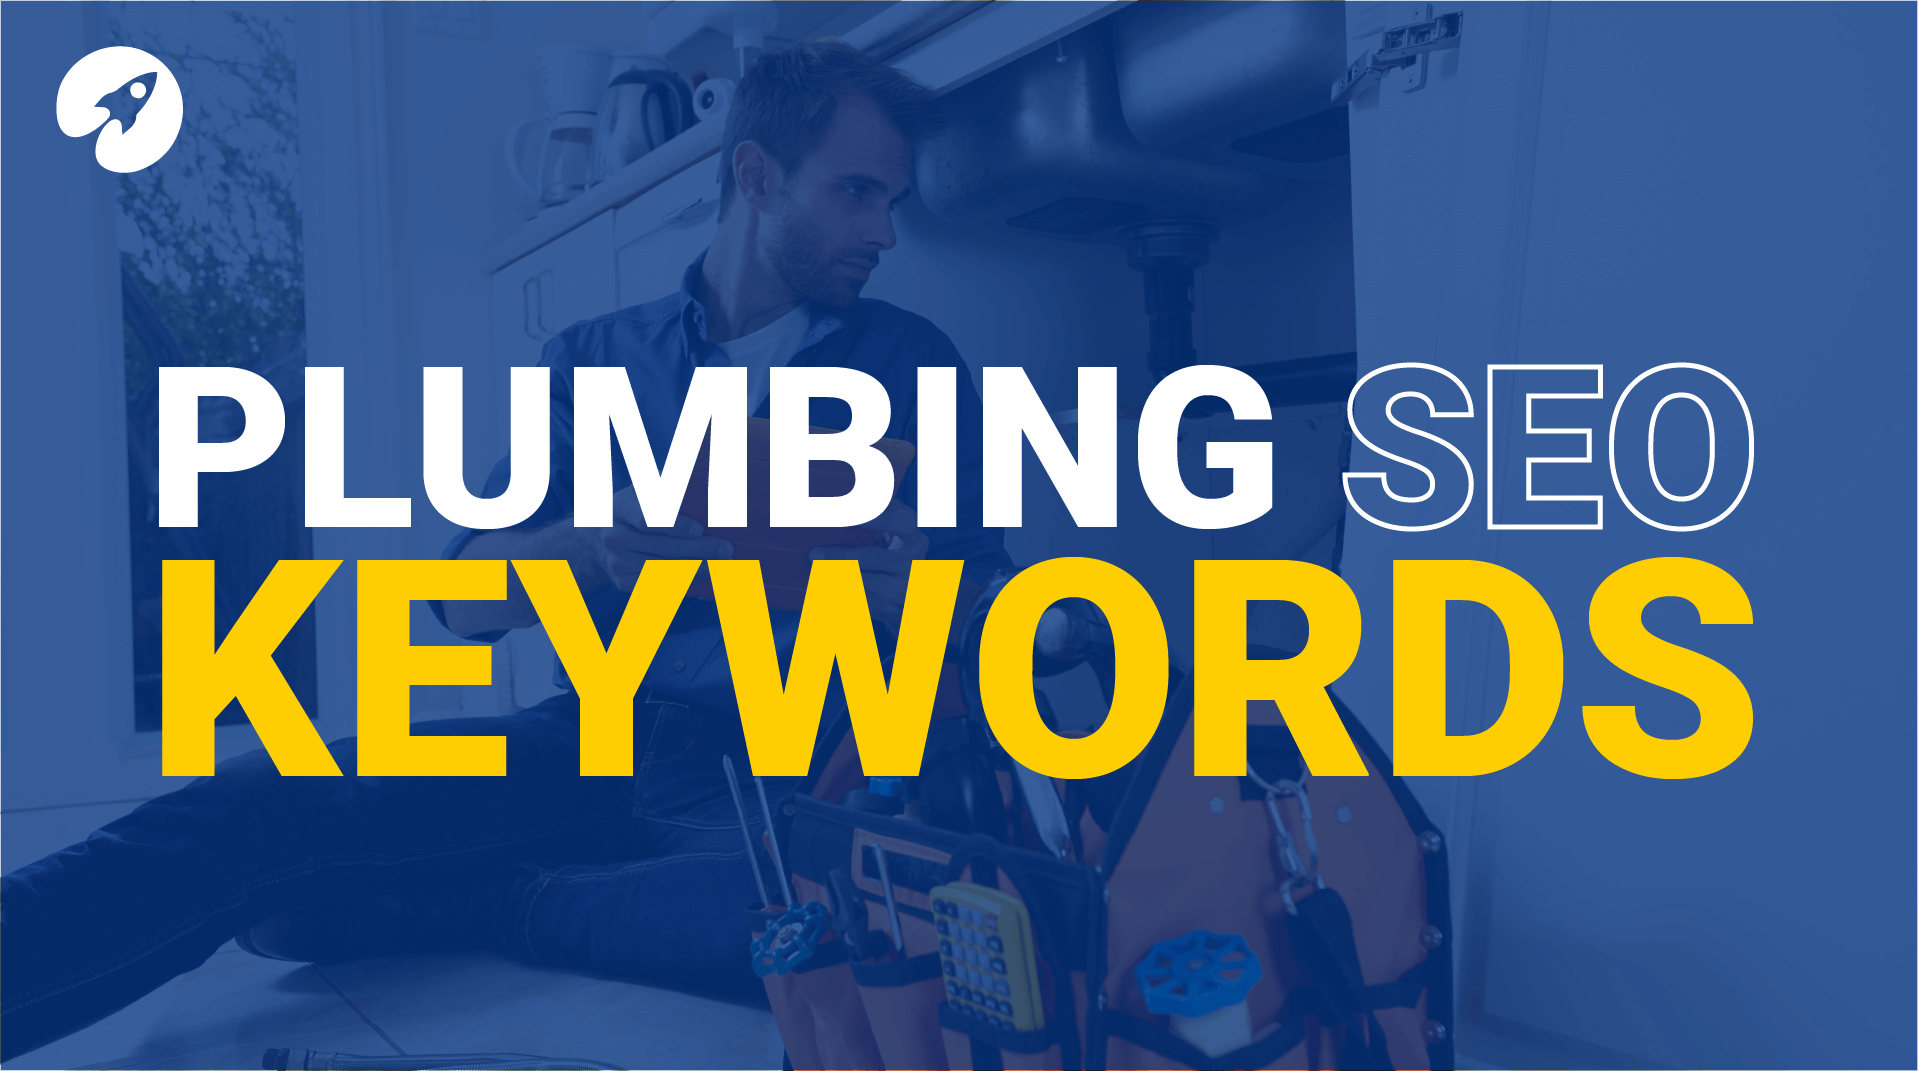 Plumbing SEO keywords